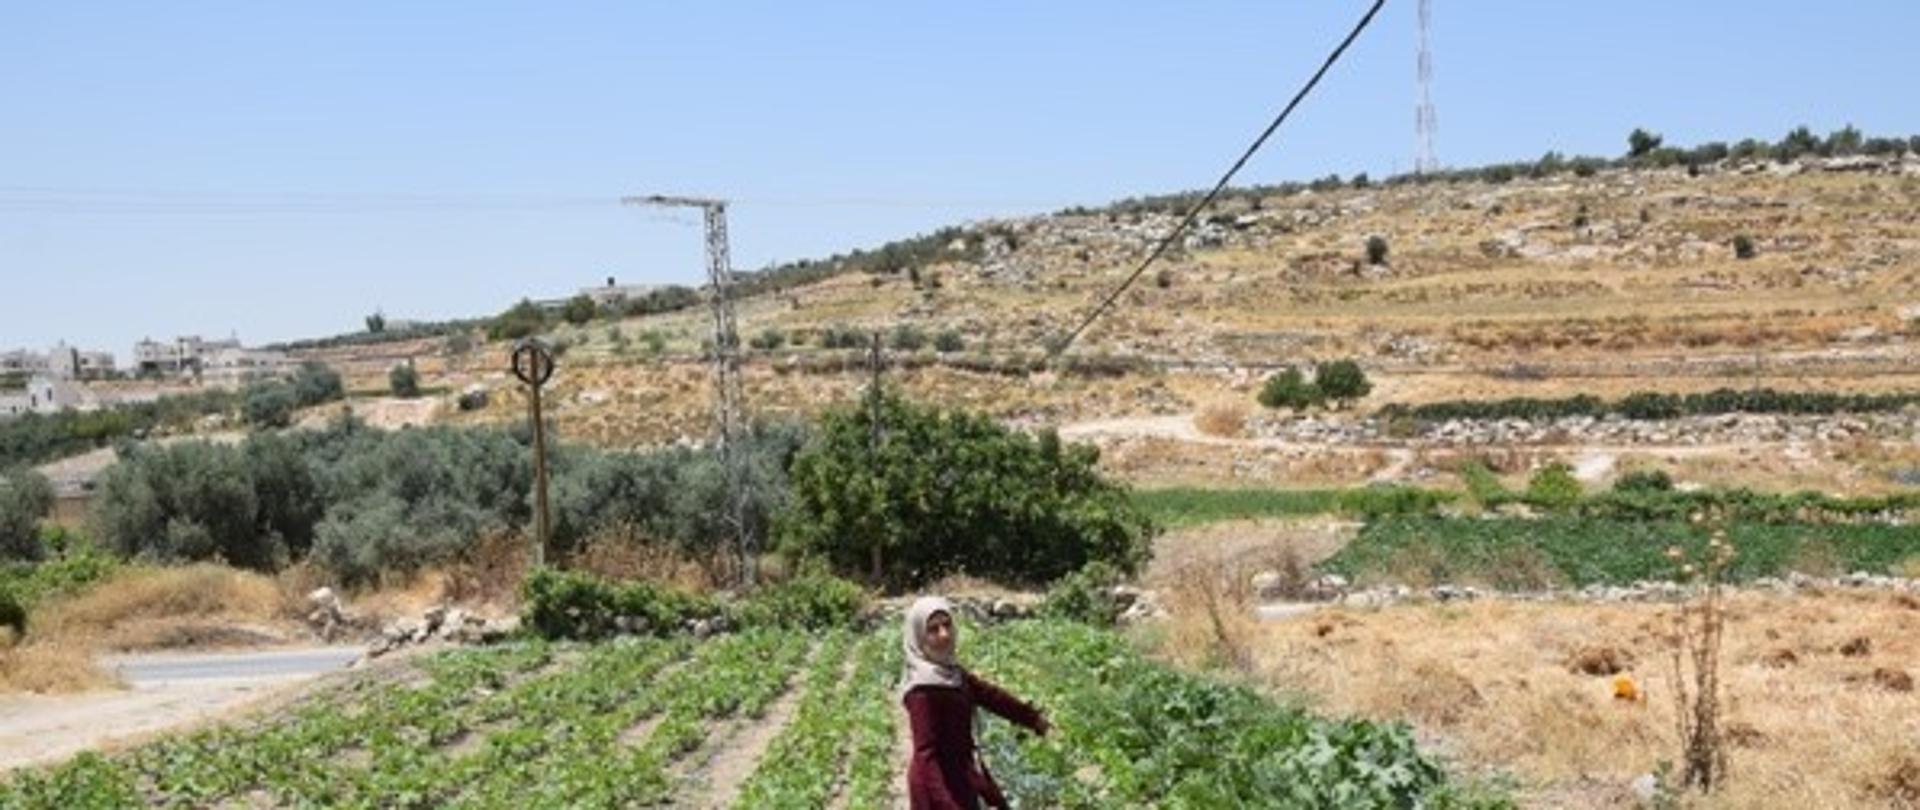 Palestine, drip irrigation system in home gardens